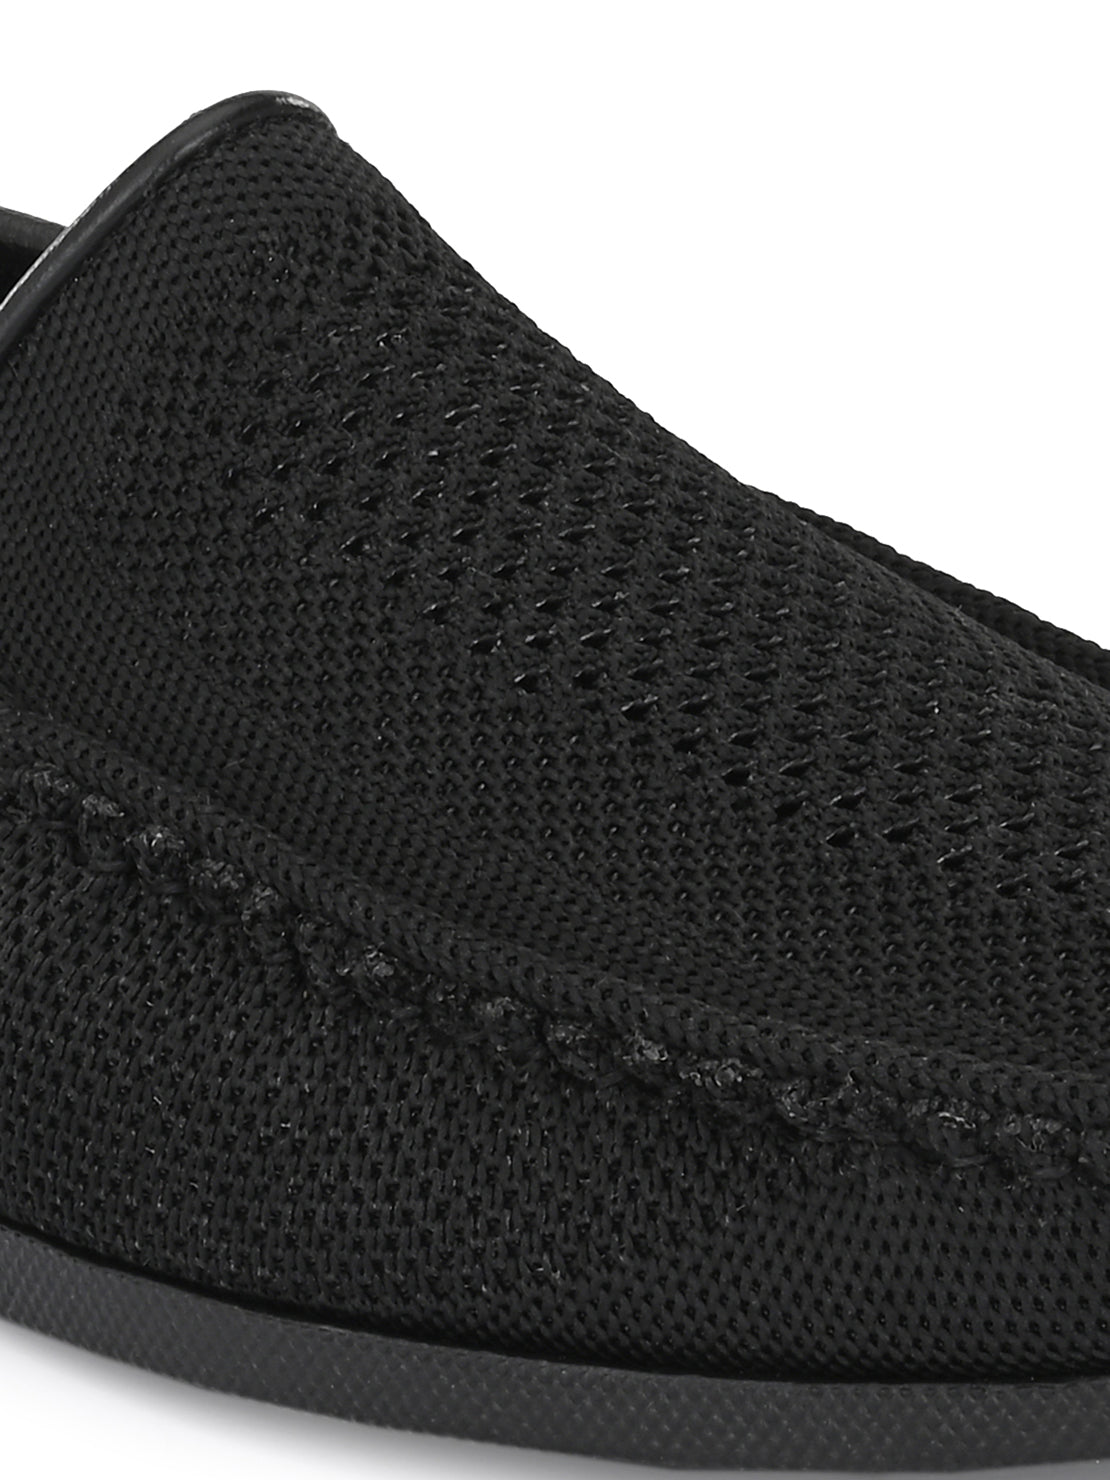 Guava Men's Black Knitted Slip On Driving Loafers (GV15JA760)